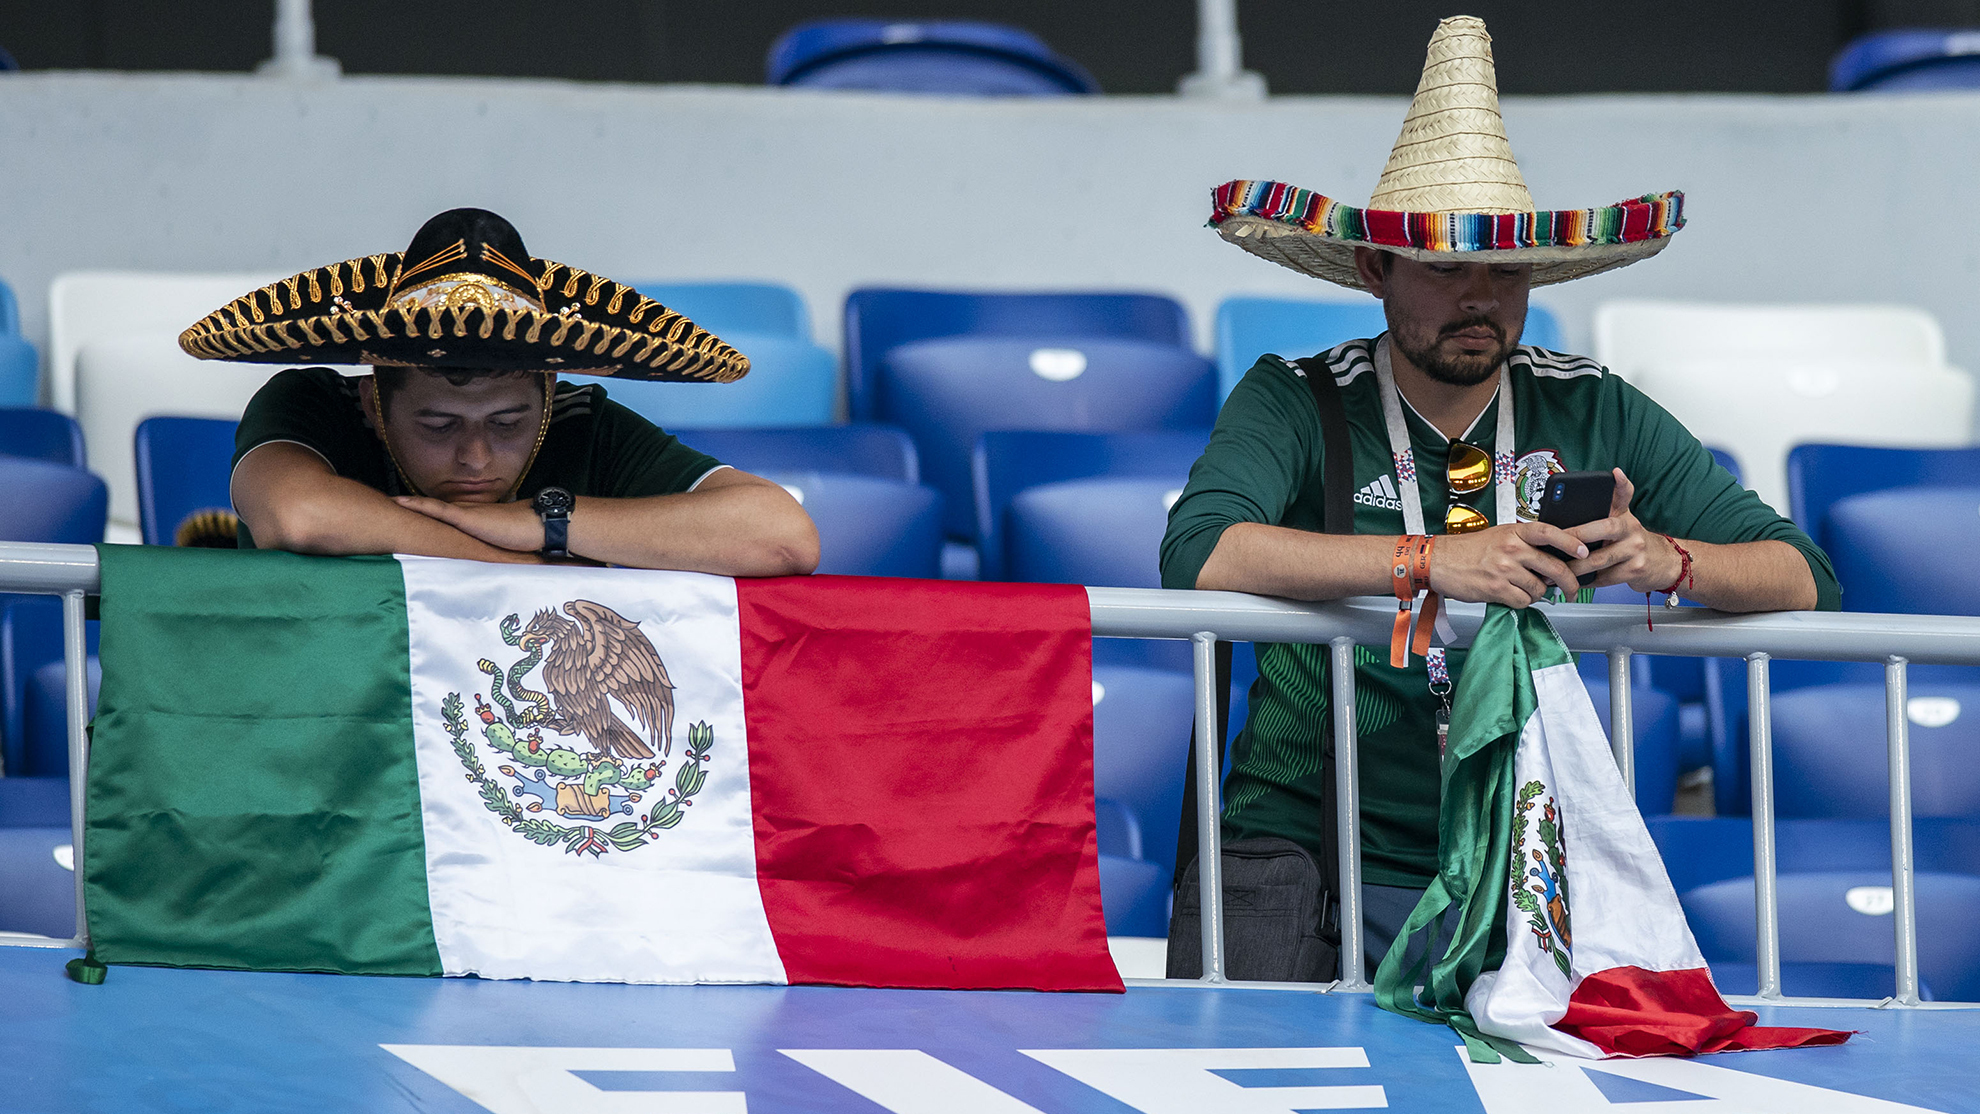 Más sinsabores que alegrías han pasado los aficionados mexicanos en últimos días.